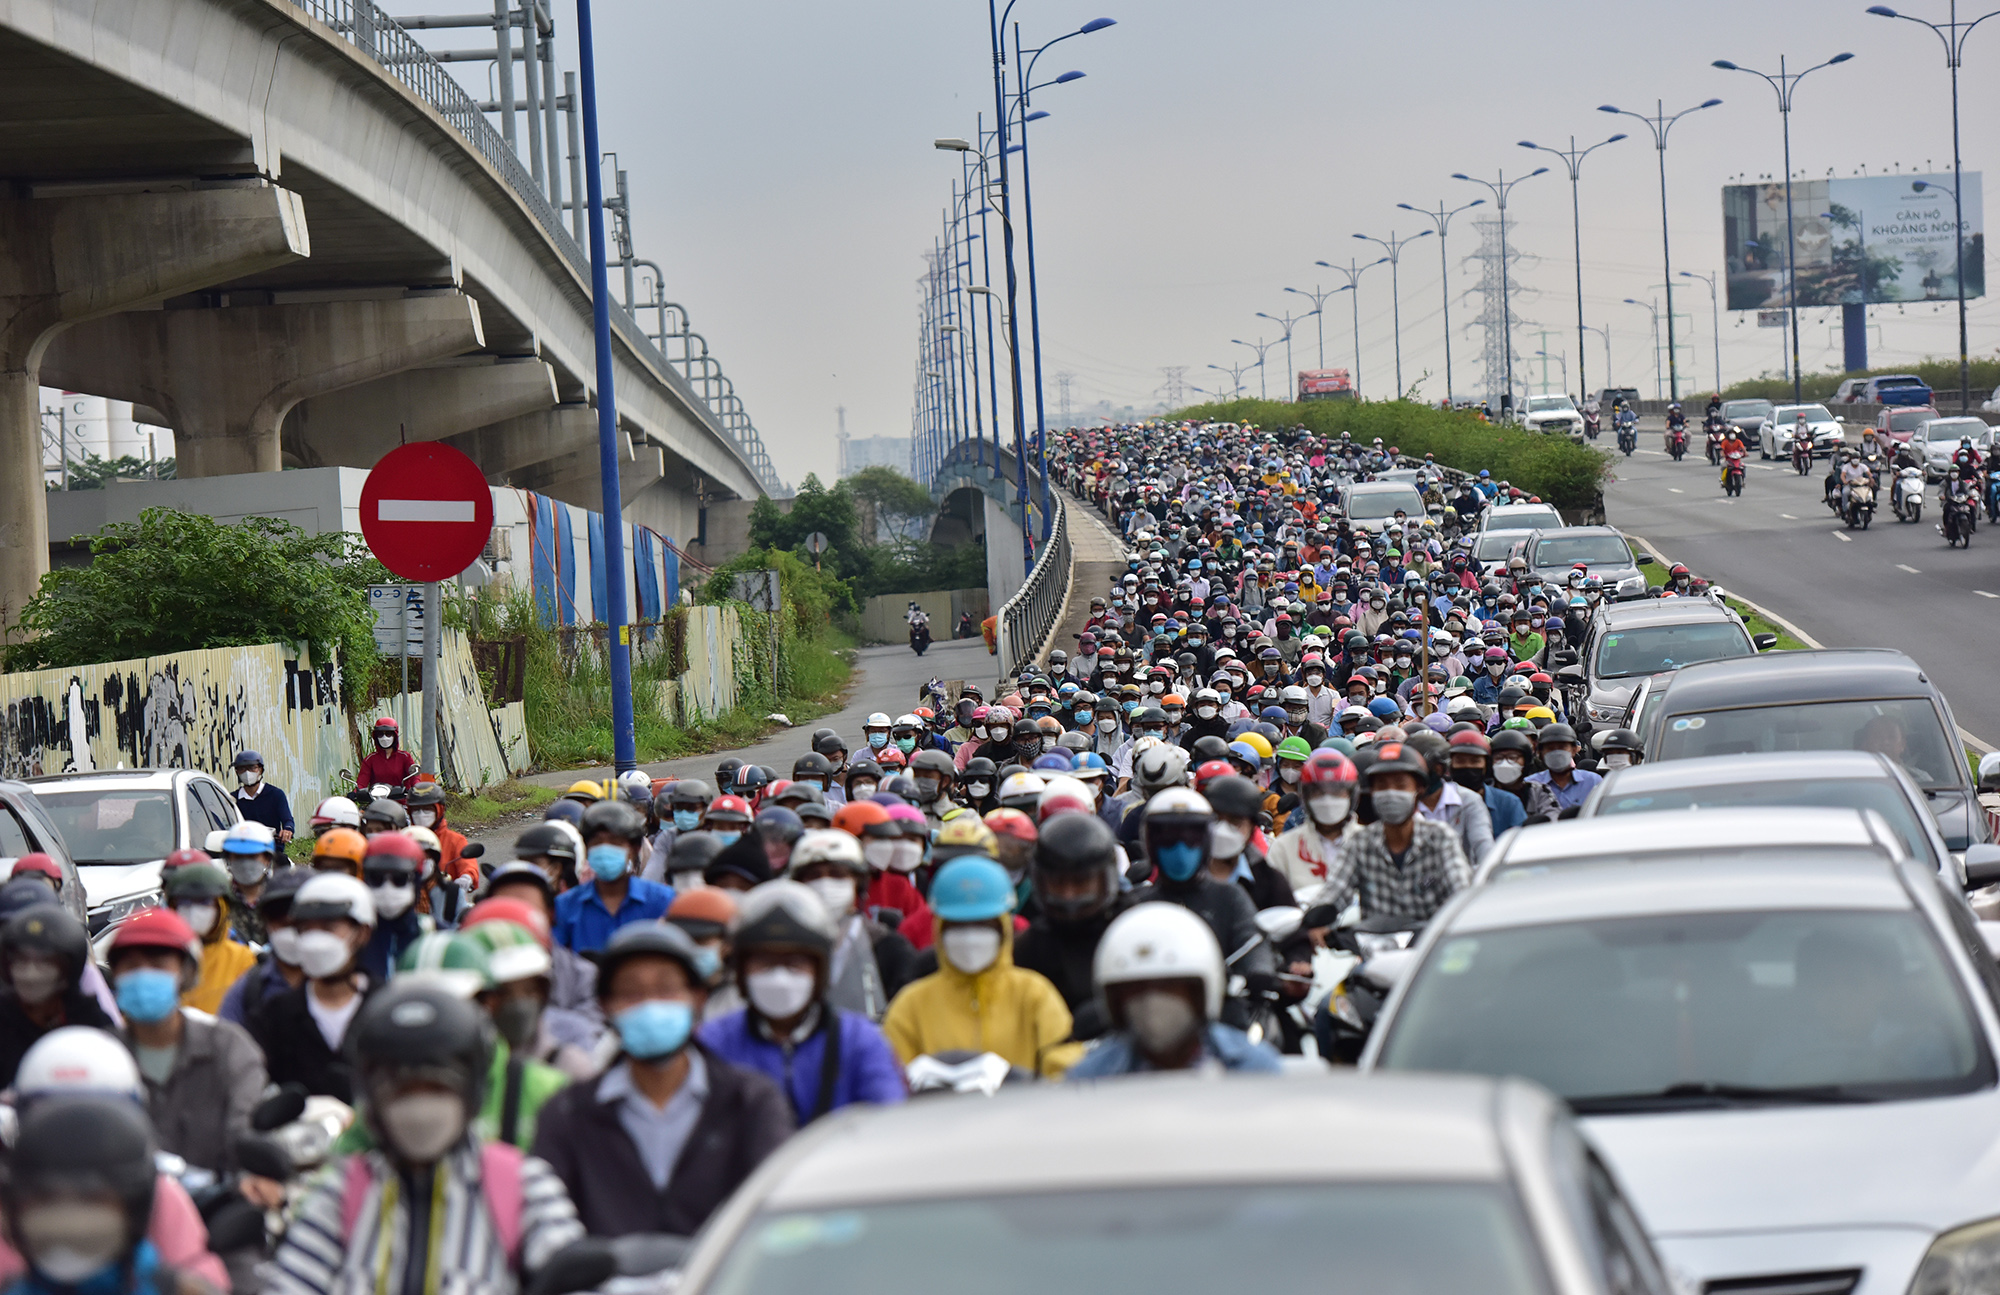 Hà Nội, TP.HCM lại tắc đường kinh hoàng sau nghỉ lễ, người dân chật vật tới nơi làm việc - 32